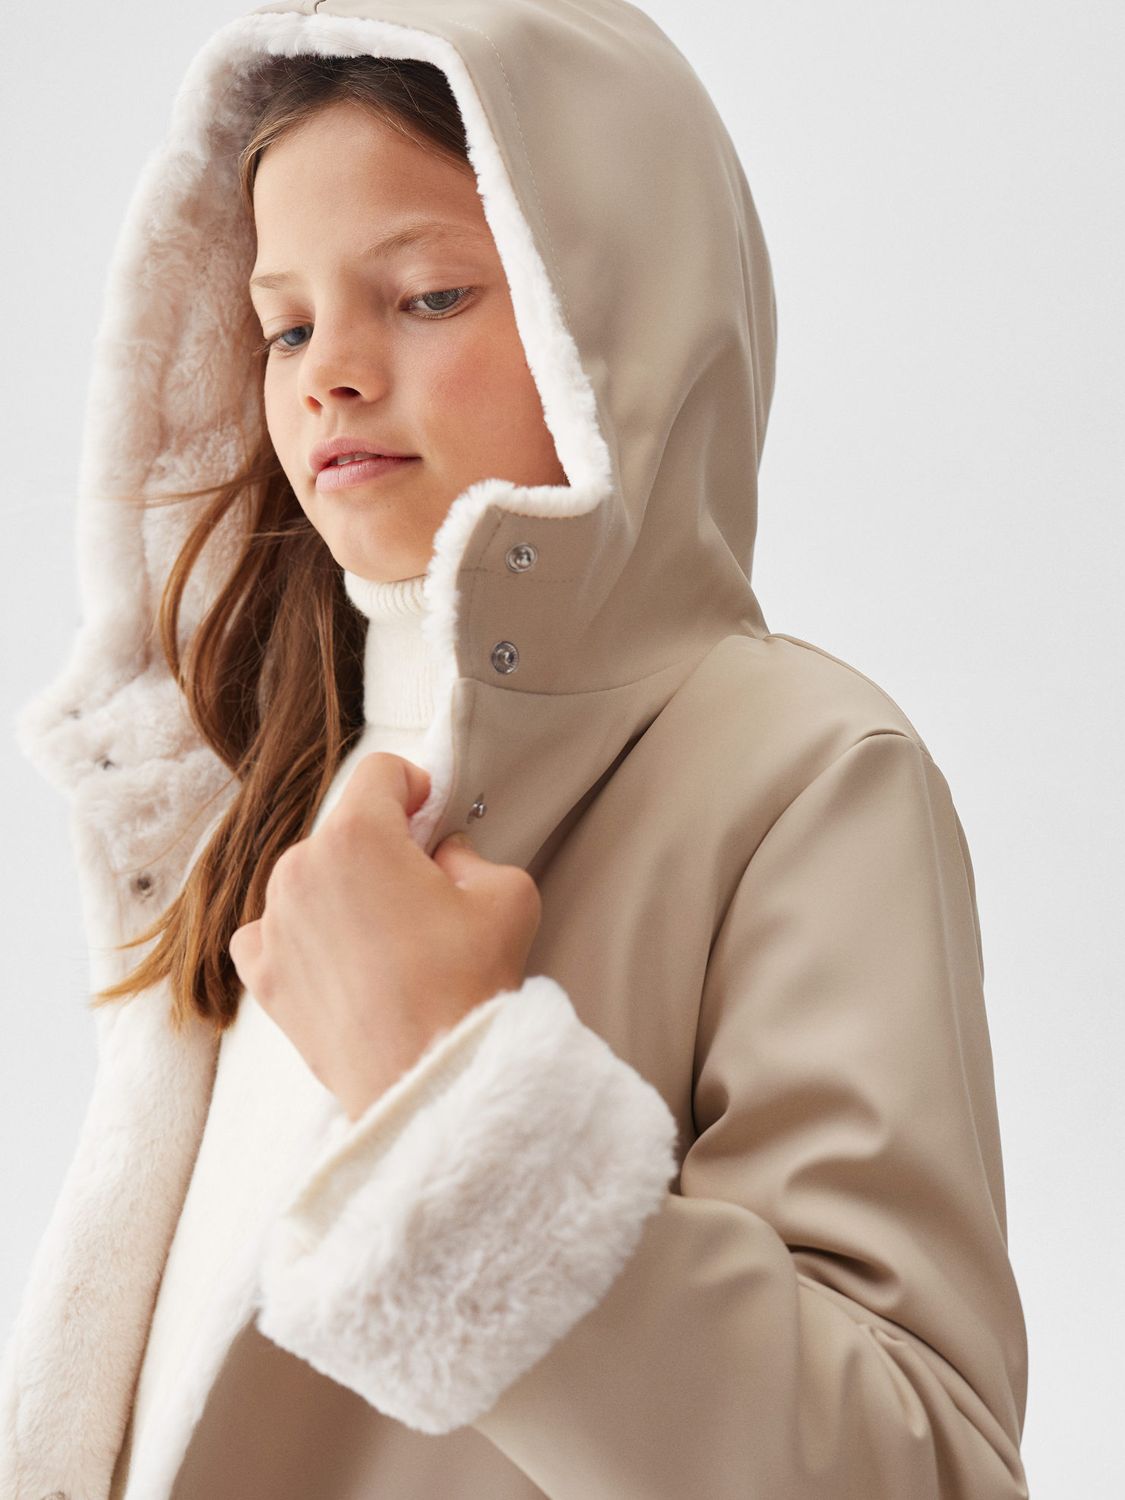 K Way Kids Eiffel shearling-lining Hooded Jacket - Farfetch